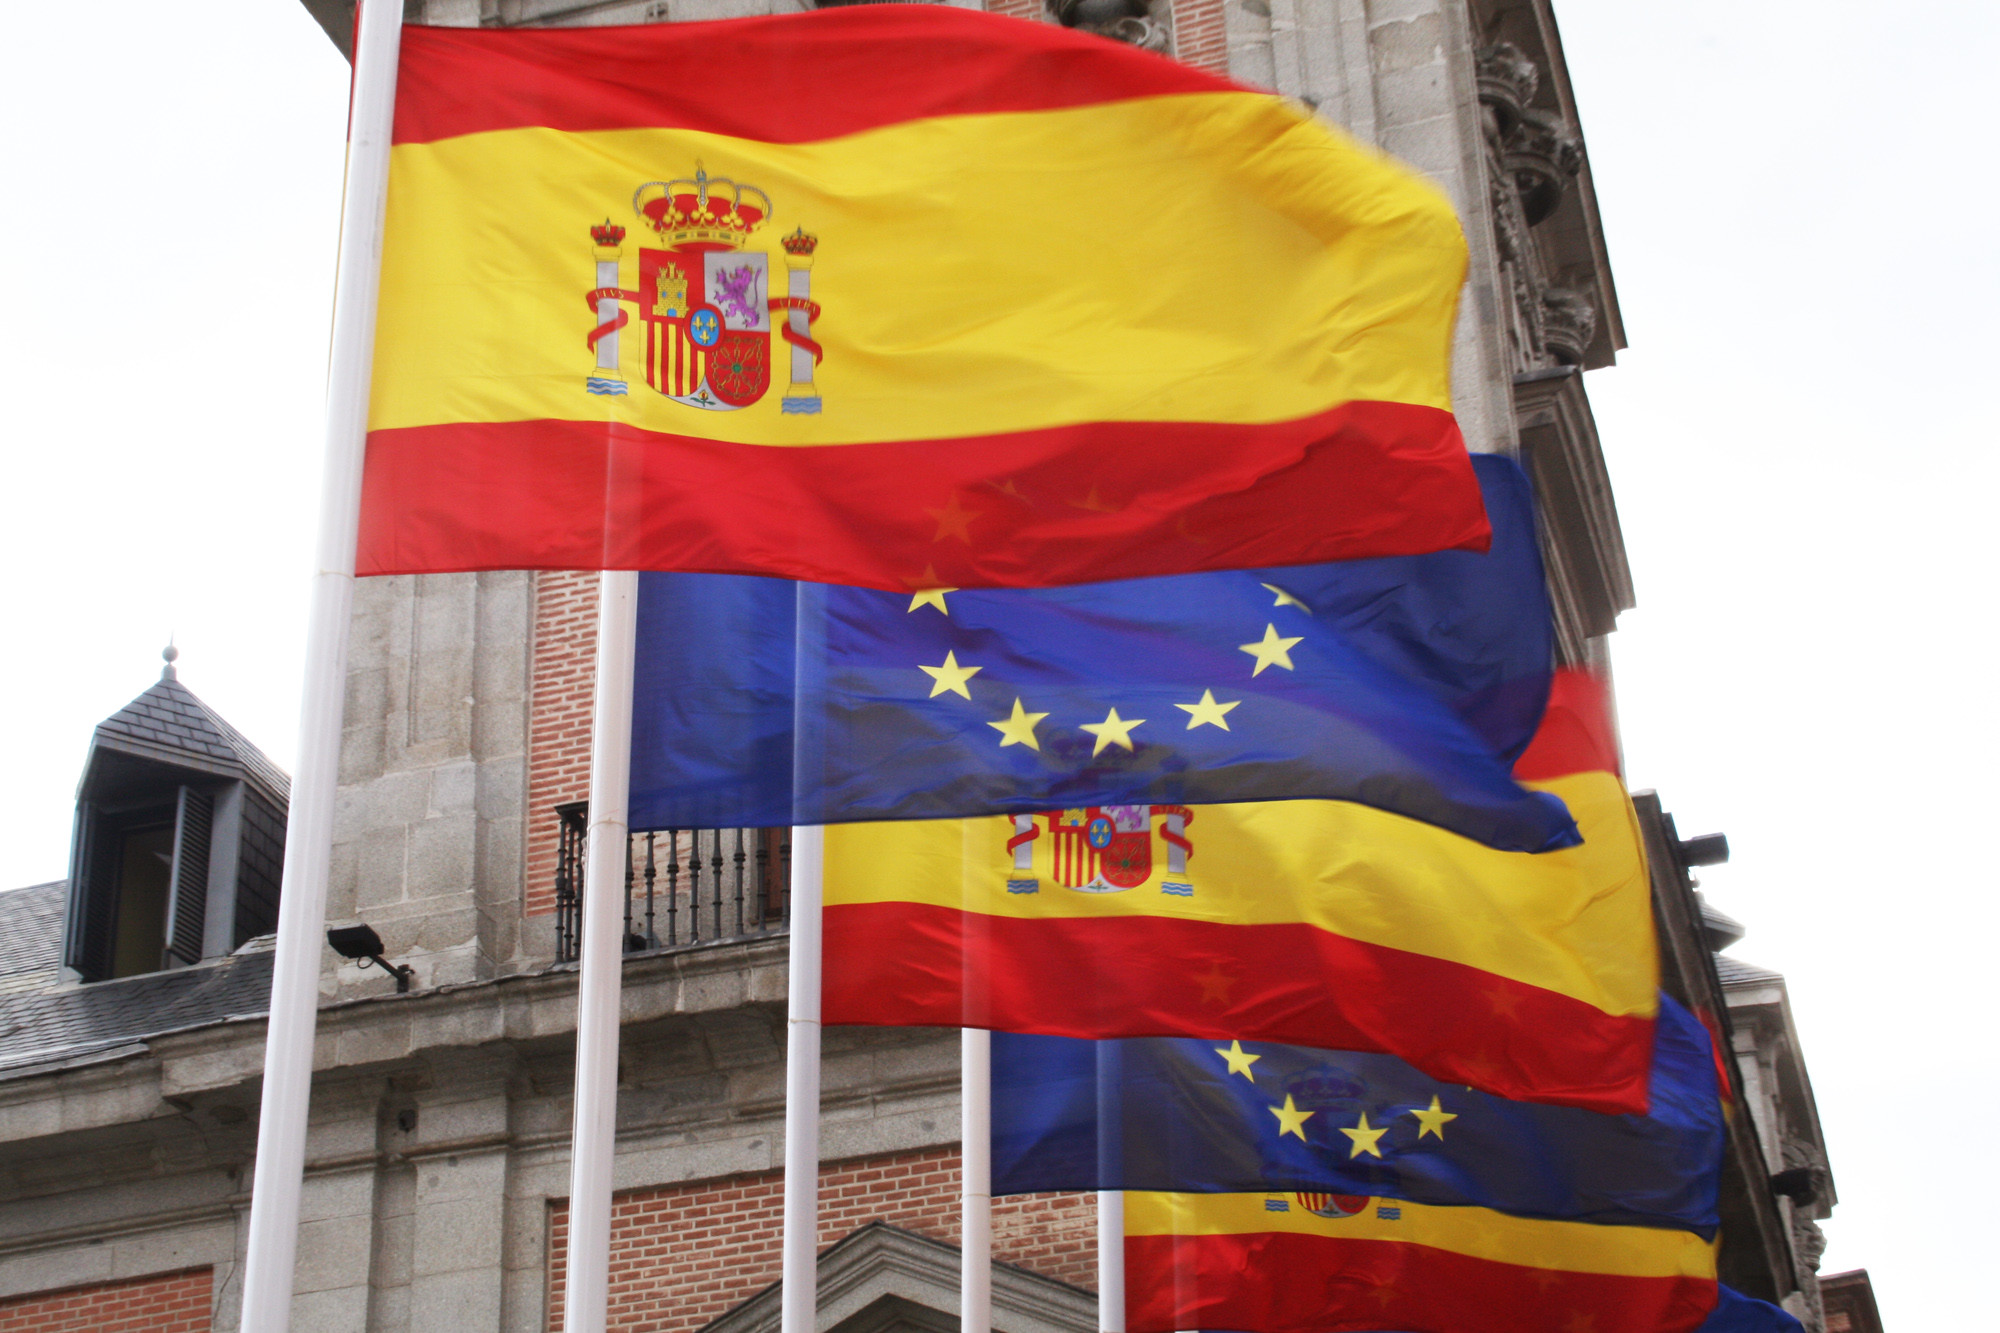 Banderas-Comision EU - Spain